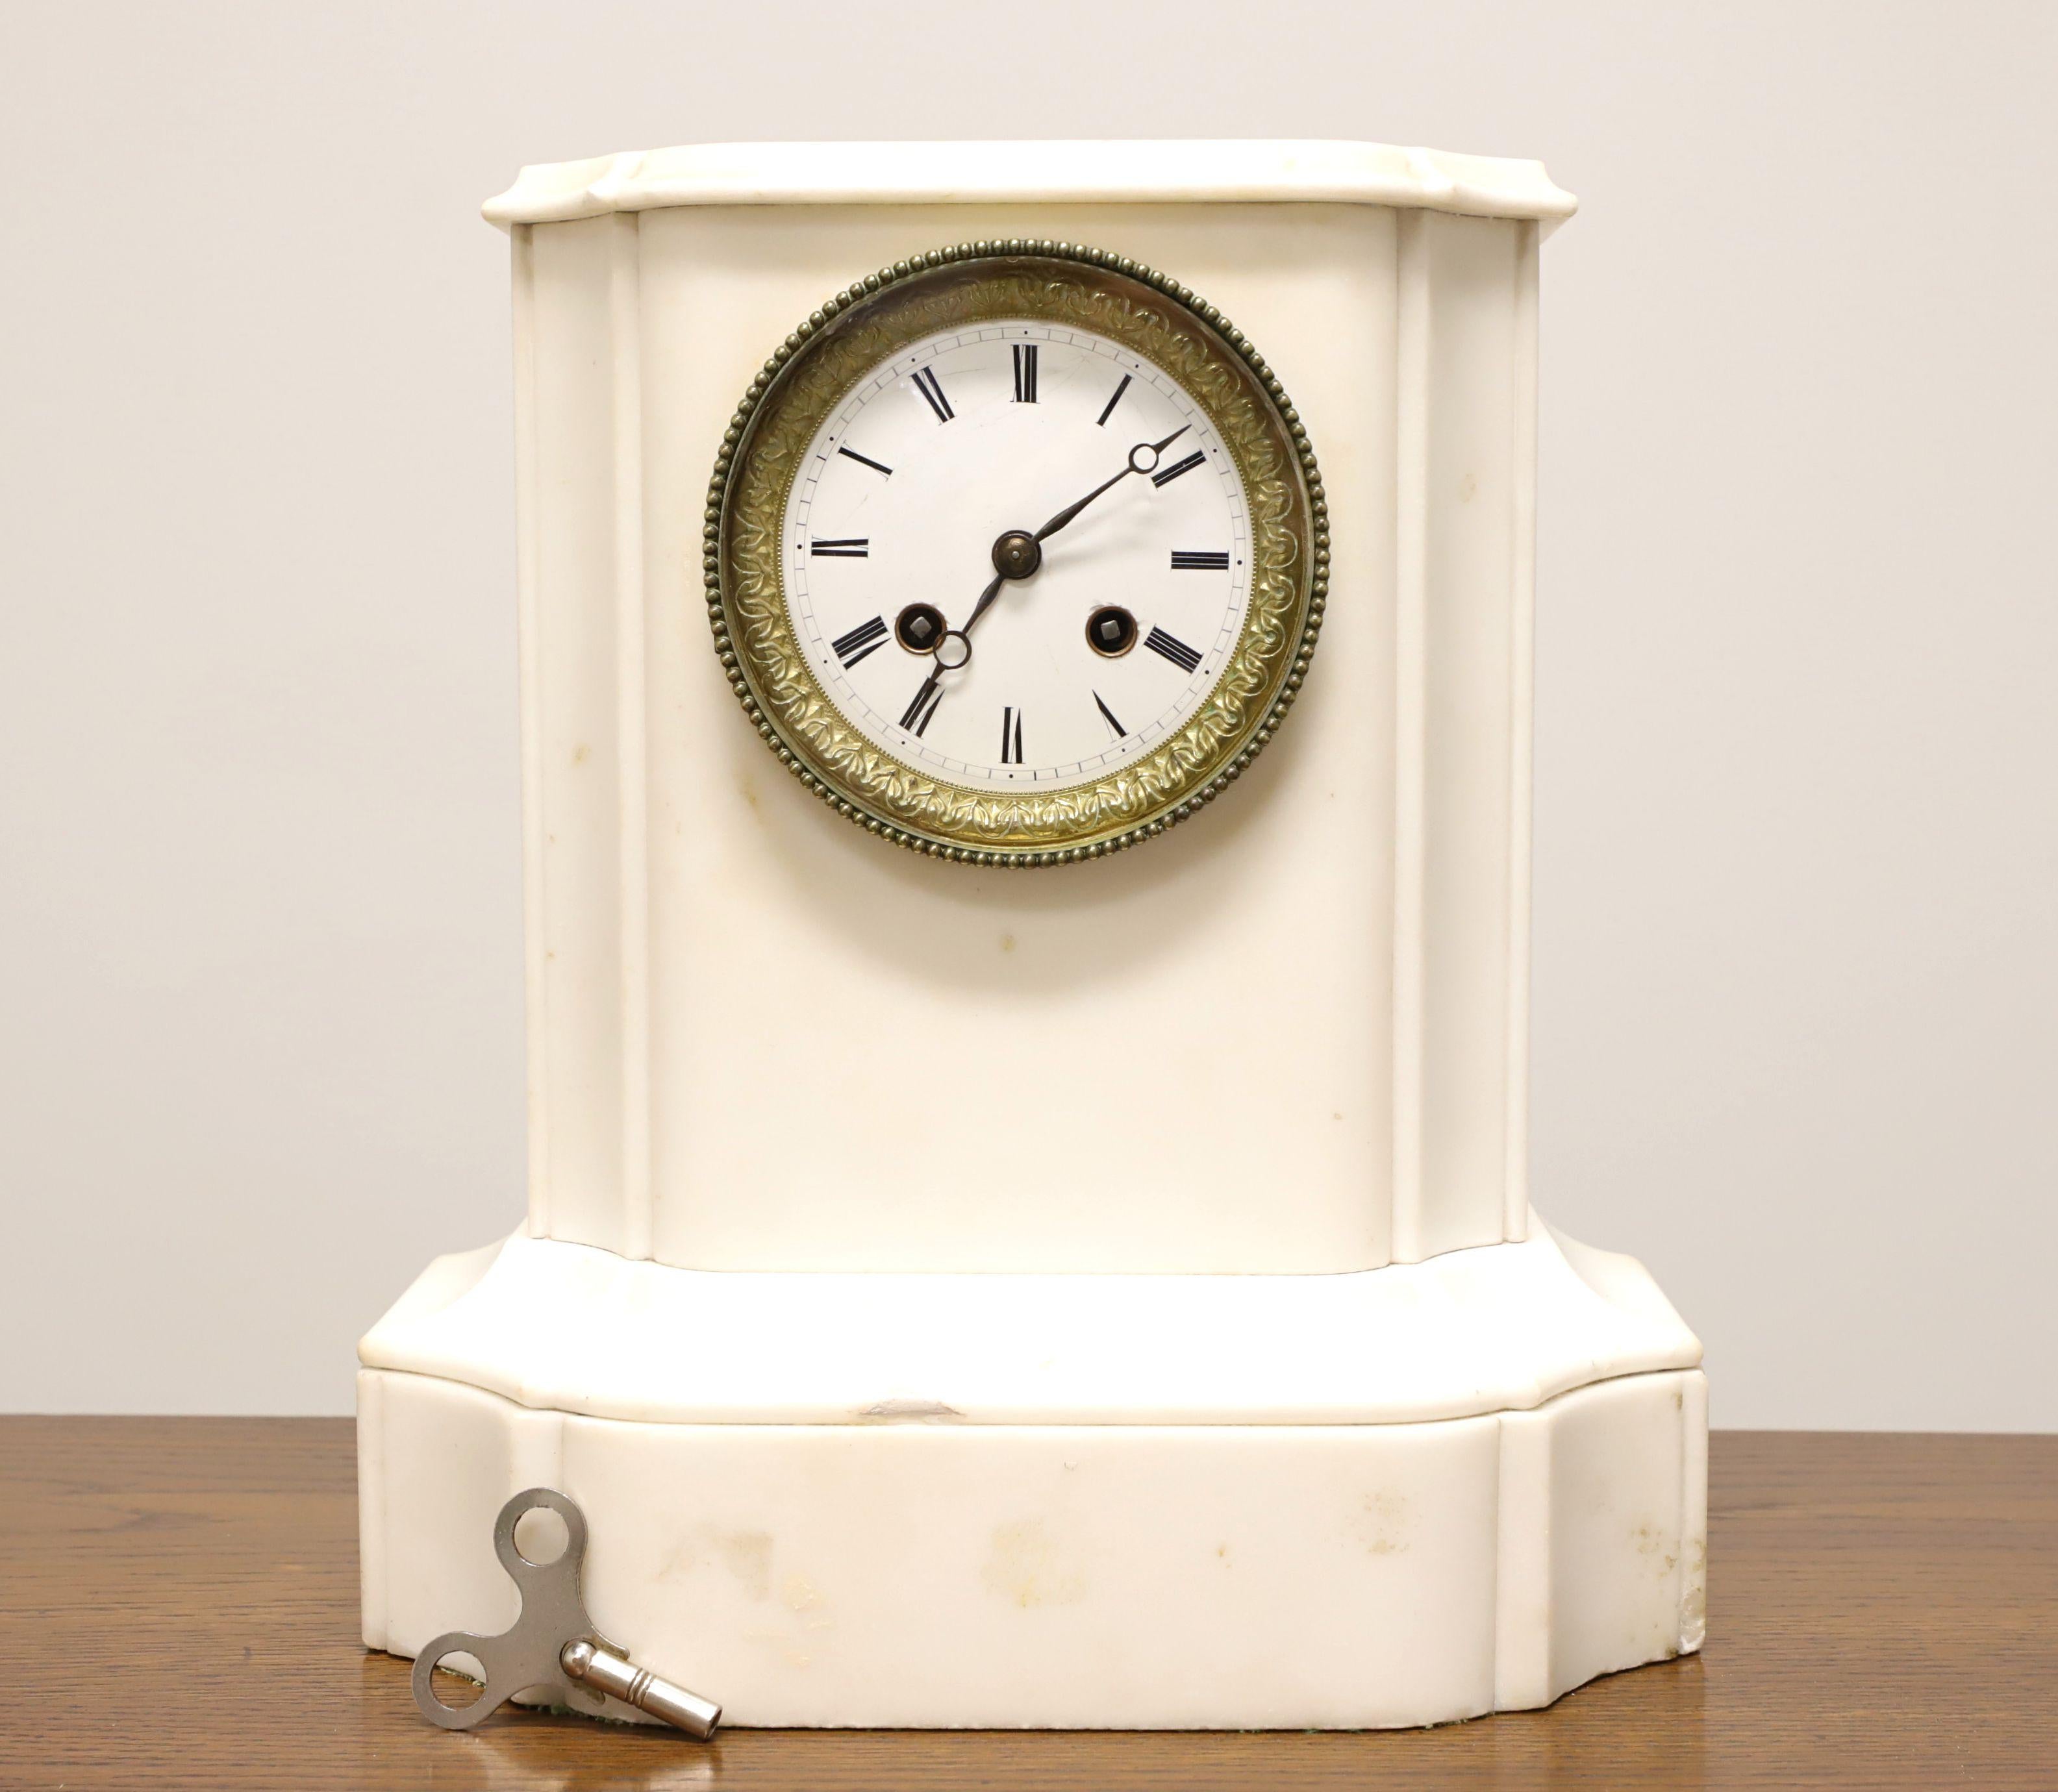 Eine antike Empire-Stil Marmor Glockenspiel Kaminsims Uhr, ohne Marke. Weißer Marmor umschließt das Uhrwerk. Das runde, dekorative, glasüberzogene Zifferblatt aus Messing hat römische Zahlen für die Stunden, Striche für die Minuten, Stunden- und